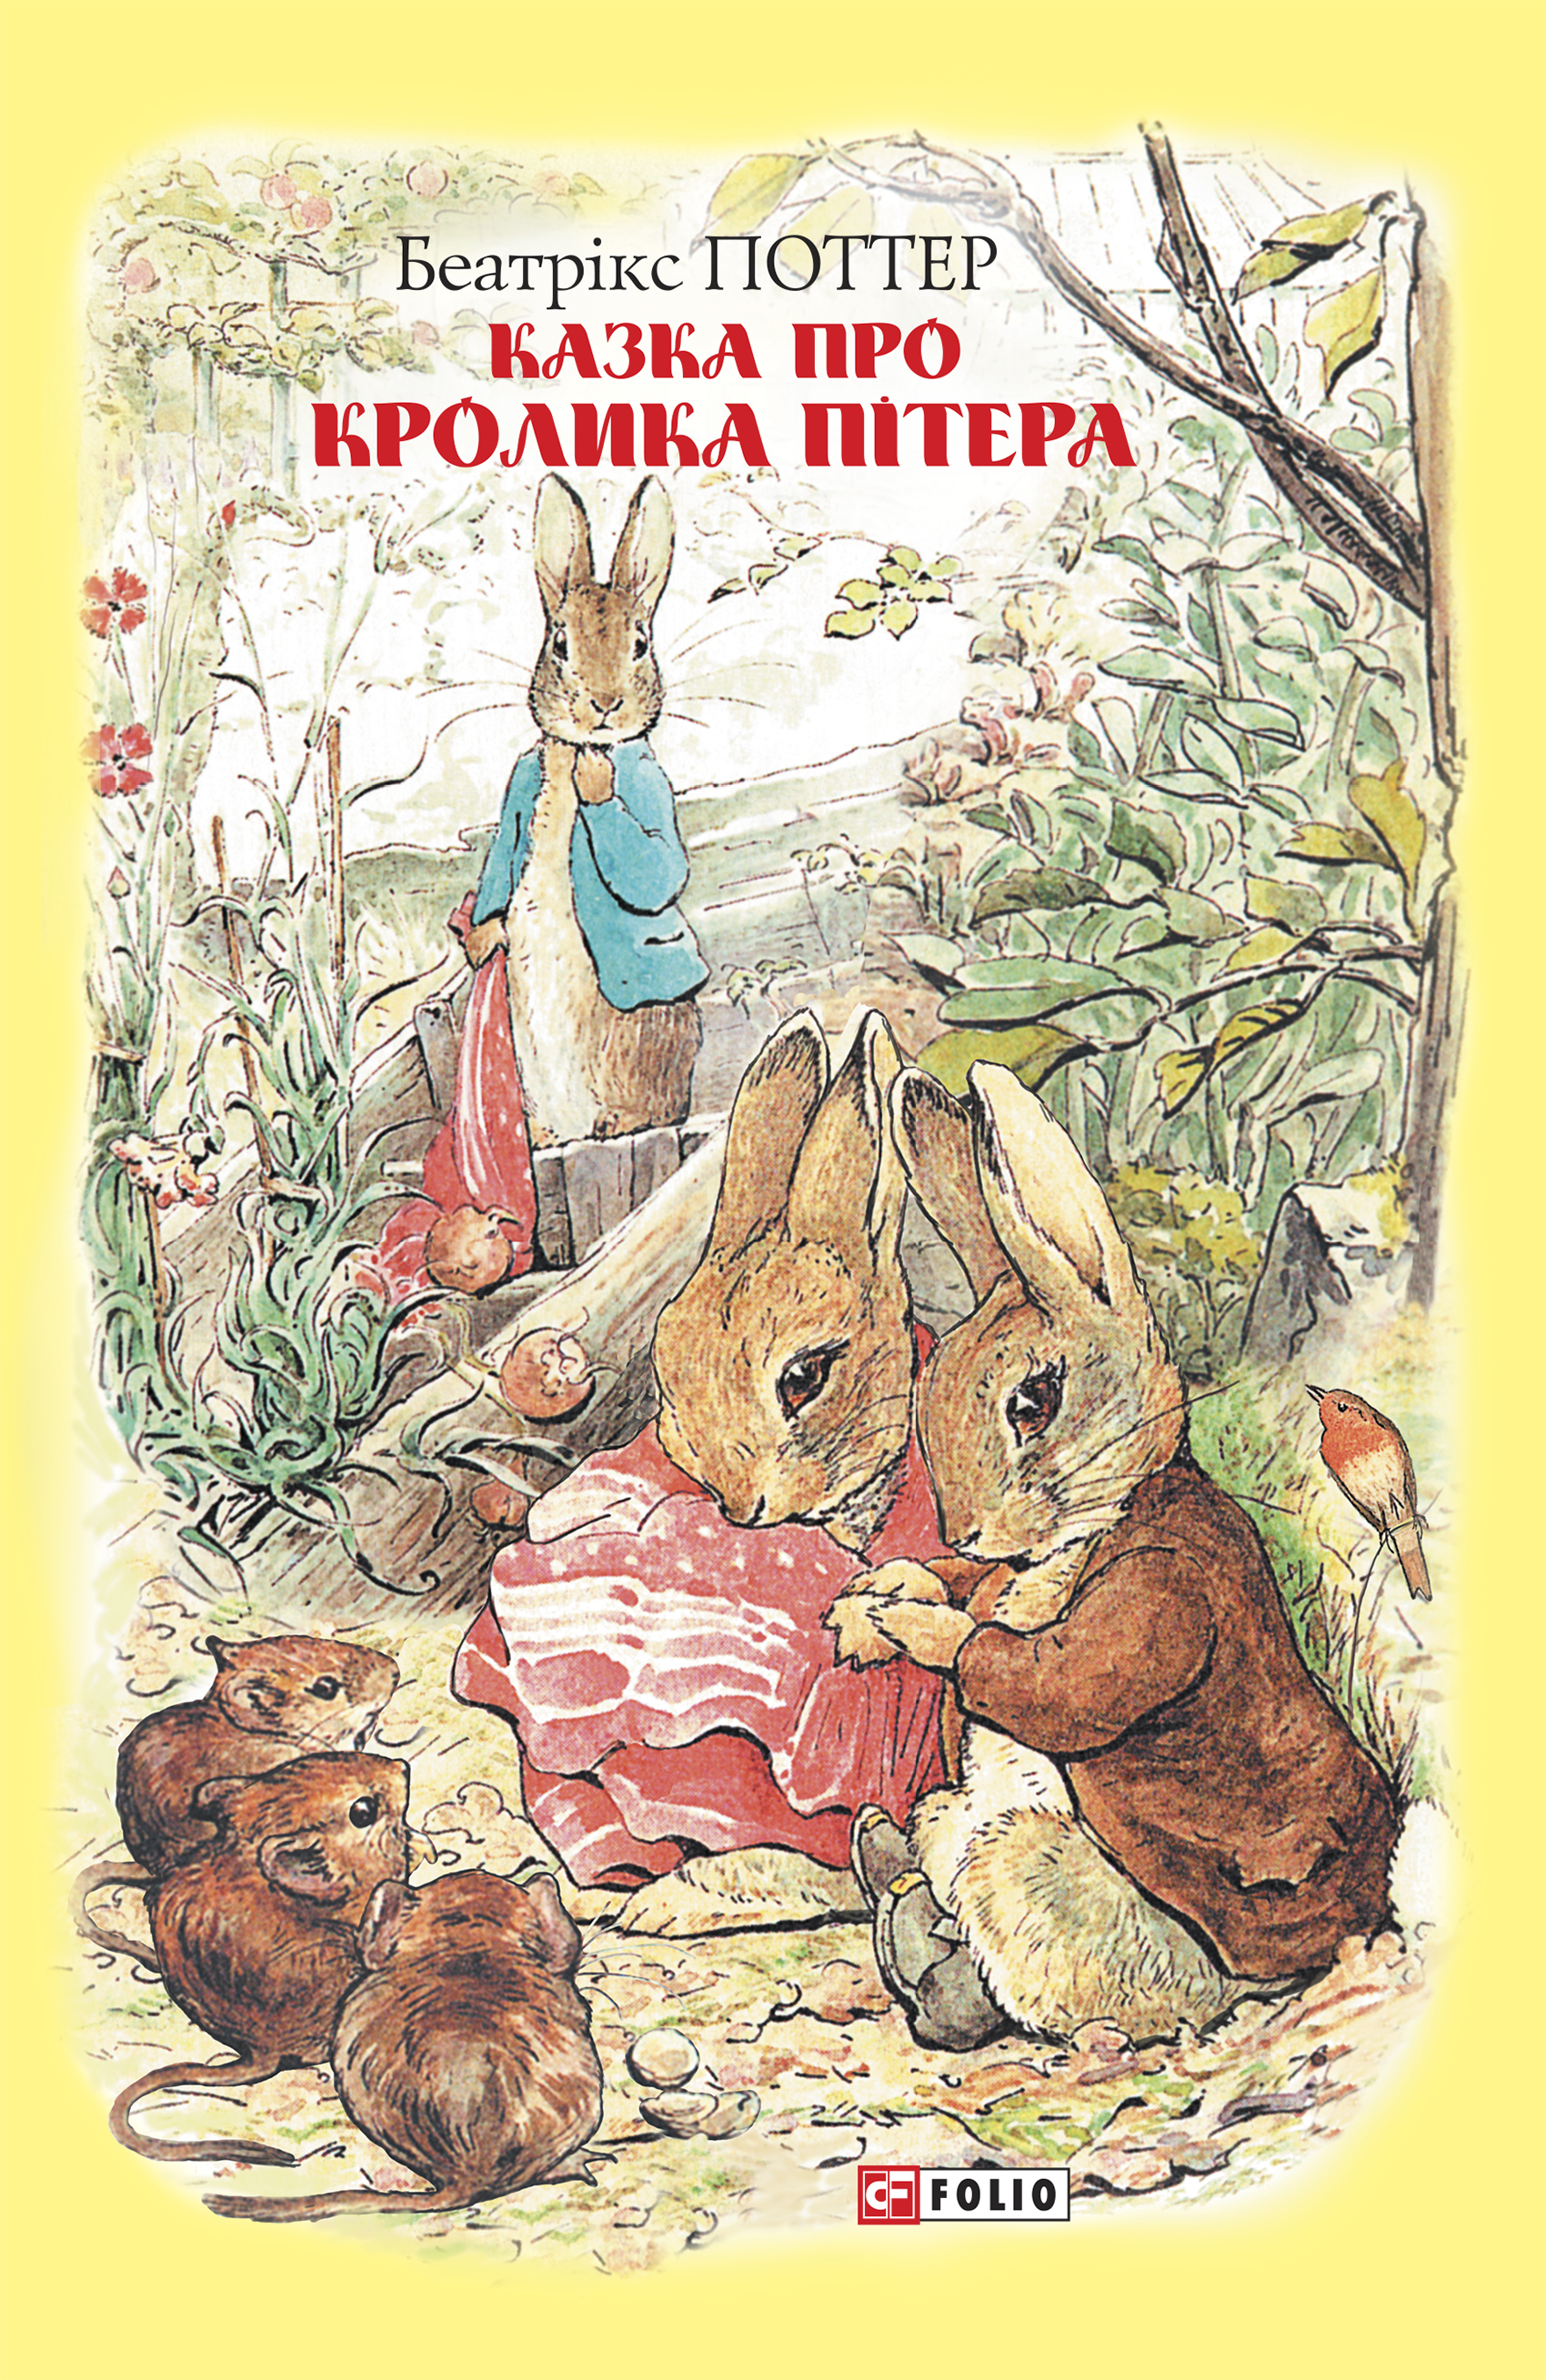 Книга Казка про кролика Пітера из серии , созданная Беатрікс Поттер, может относится к жанру Литература 20 века, Зарубежная классика, Сказки. Стоимость электронной книги Казка про кролика Пітера с идентификатором 51131199 составляет 154.00 руб.